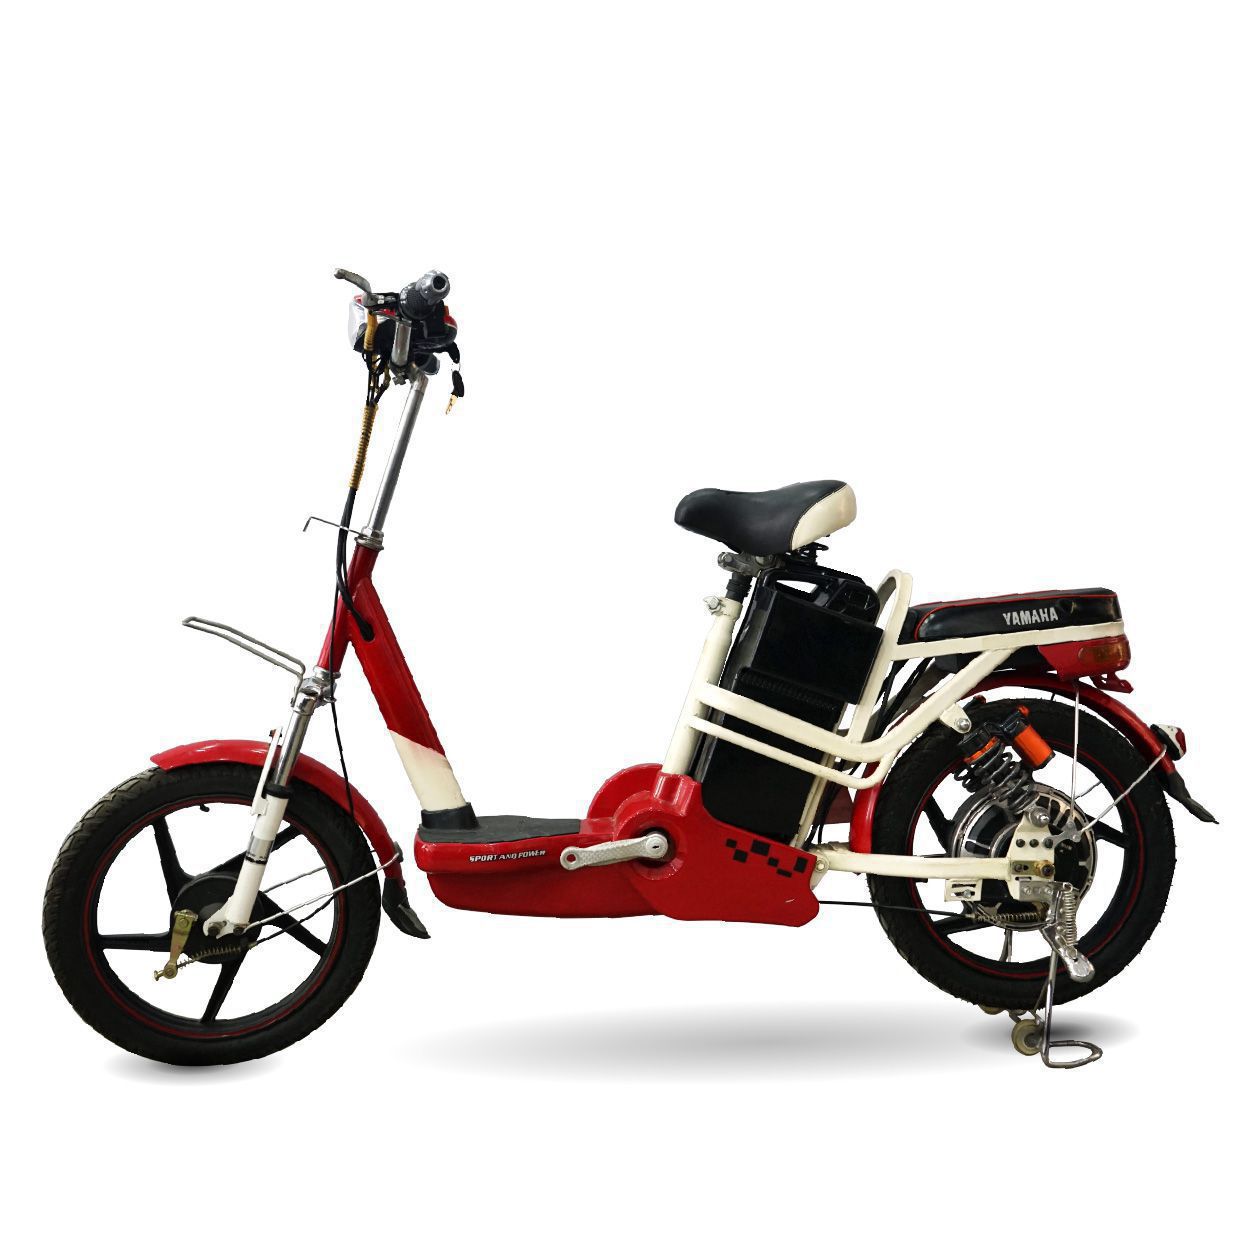 Mua bán xe đạp điện cũ giá rẻ 0902265444  Hanoi